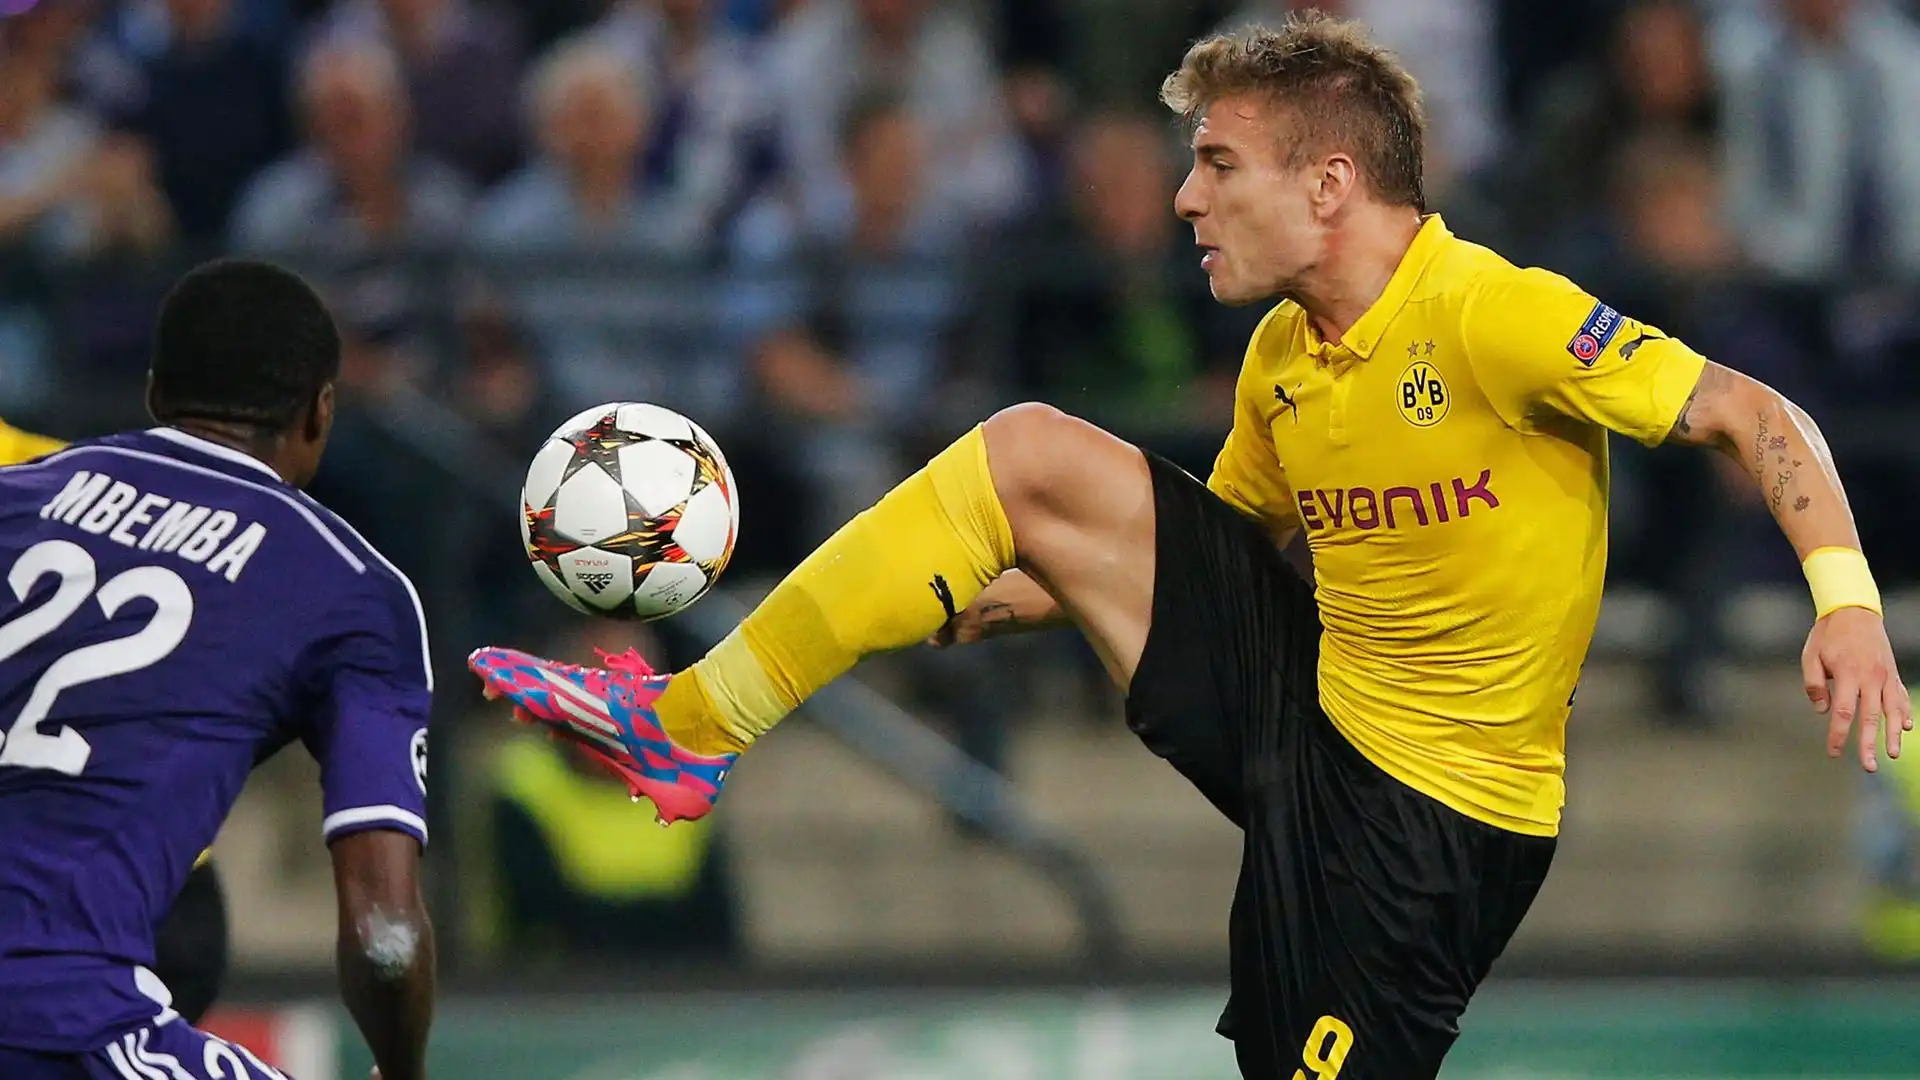 Nella lunga carriera dell'attaccante, quella al Borussia Dortmund è tra le esperienze più negative